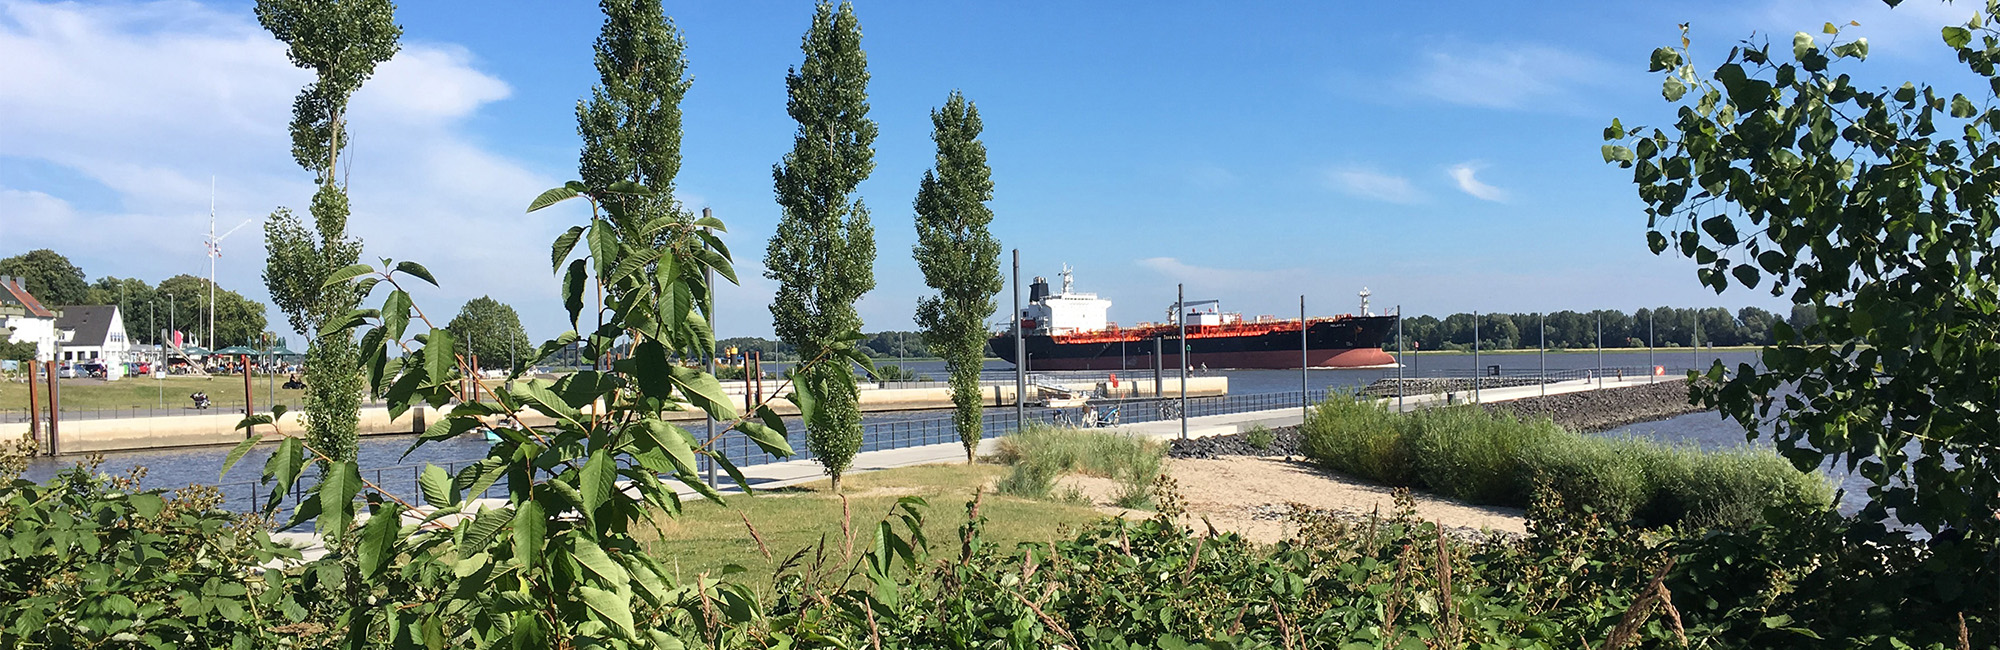 Immobilienmakler Wedel - Das von Hohorst & Schwier erstellte Bild zeigt den neuen Schulauer Hafen in Wedel. Auf der Elbe sieht man ein vorbeifahrendes Frachtschiff während im Vordergrund der Hafen und die Promenade zu erkennen ist. Die Aufnahme wurde an einem sonnigen Tag gemacht.